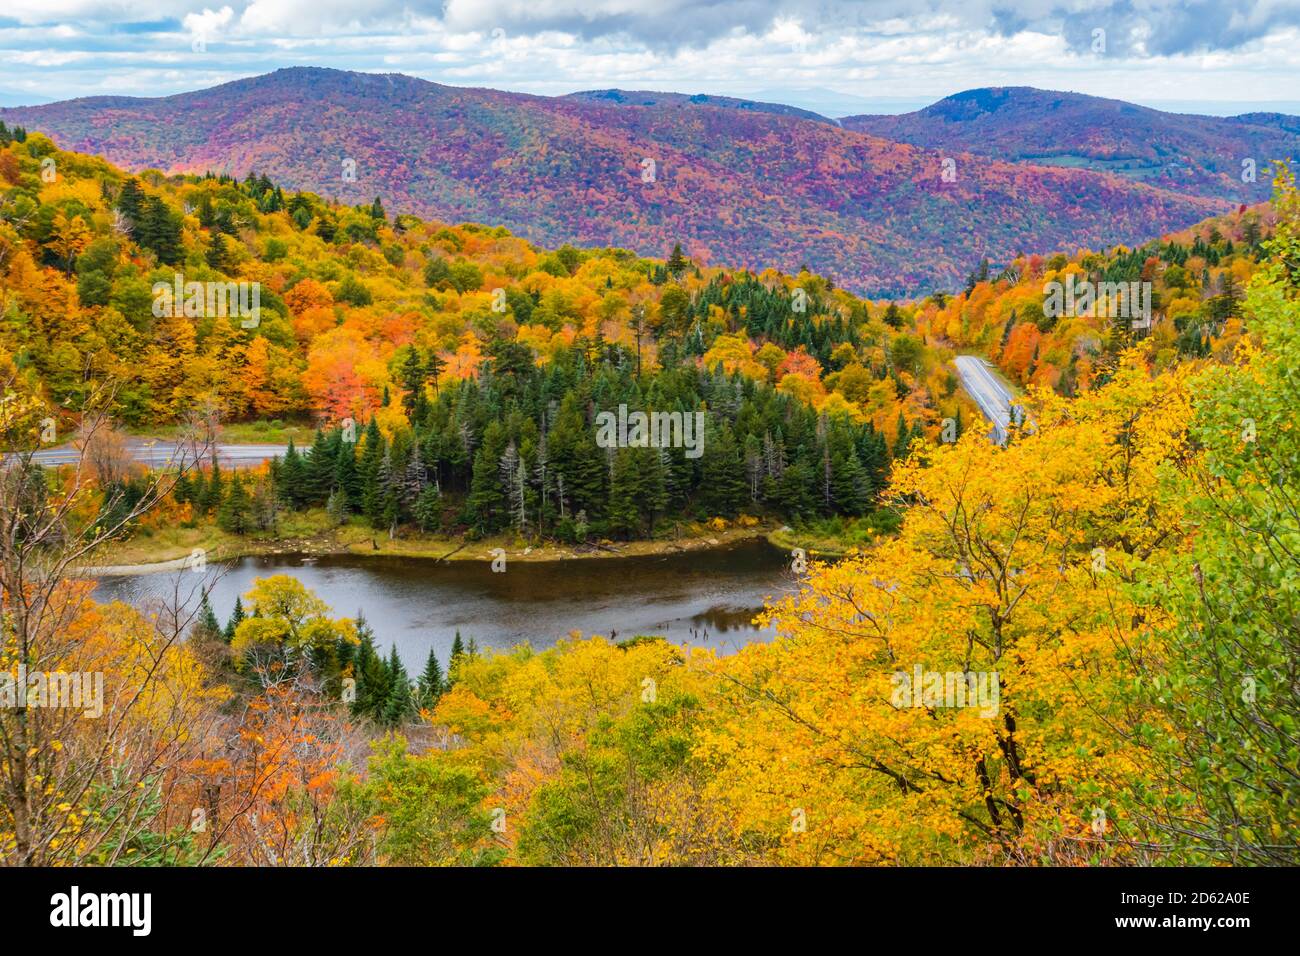 La carretera serpentea a través de la brecha Apalache, un paso de montaña en las Montañas Verdes de Vermont, en un follaje de otoño de colores brillantes Foto de stock